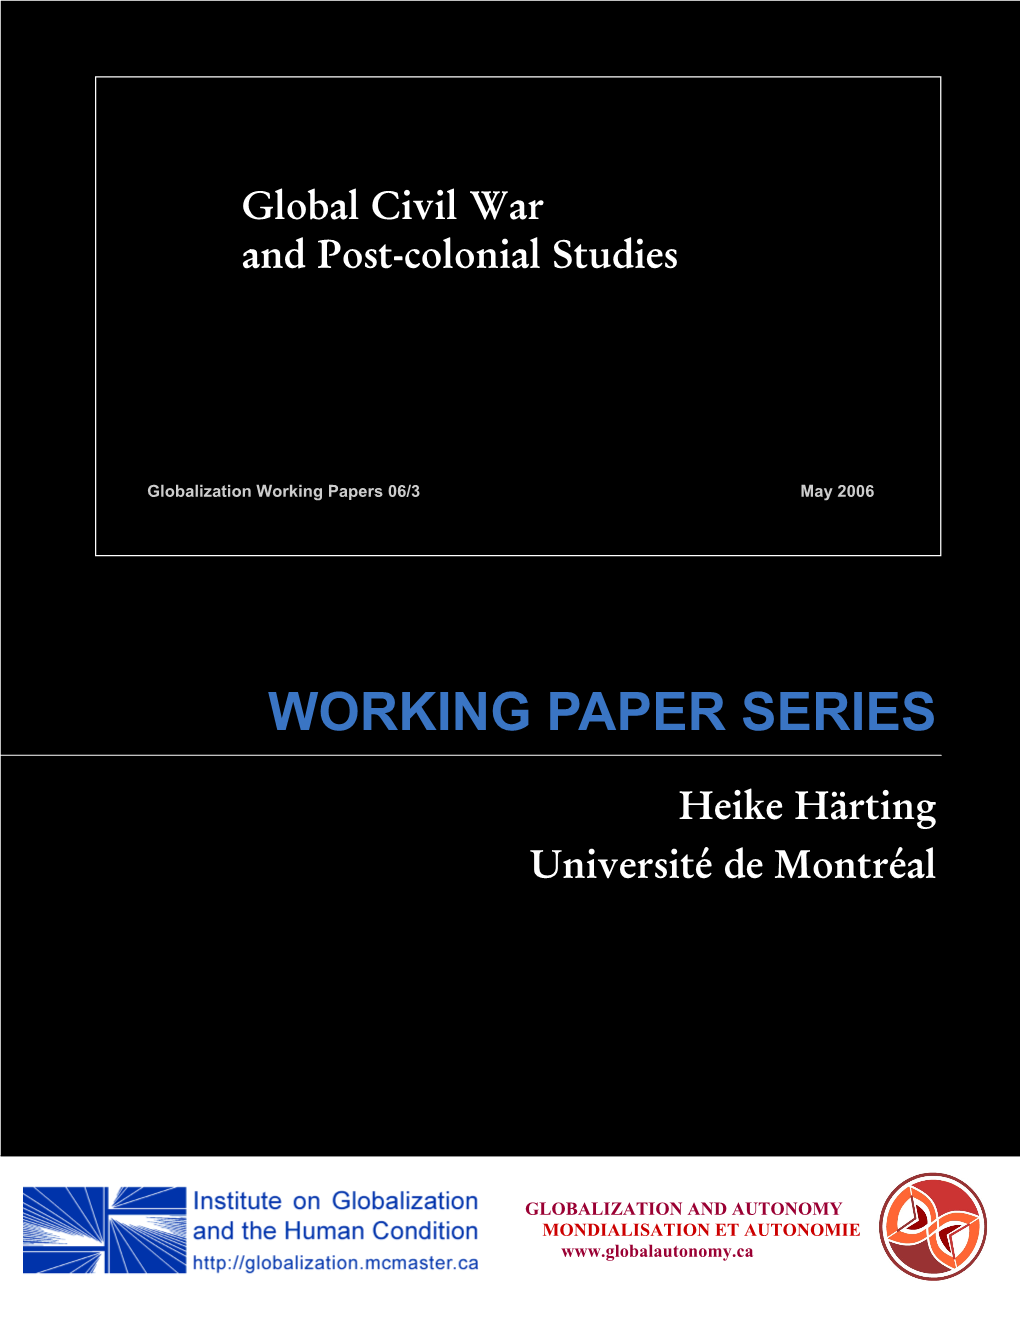 Global Civil War and Post-Colonial Studies